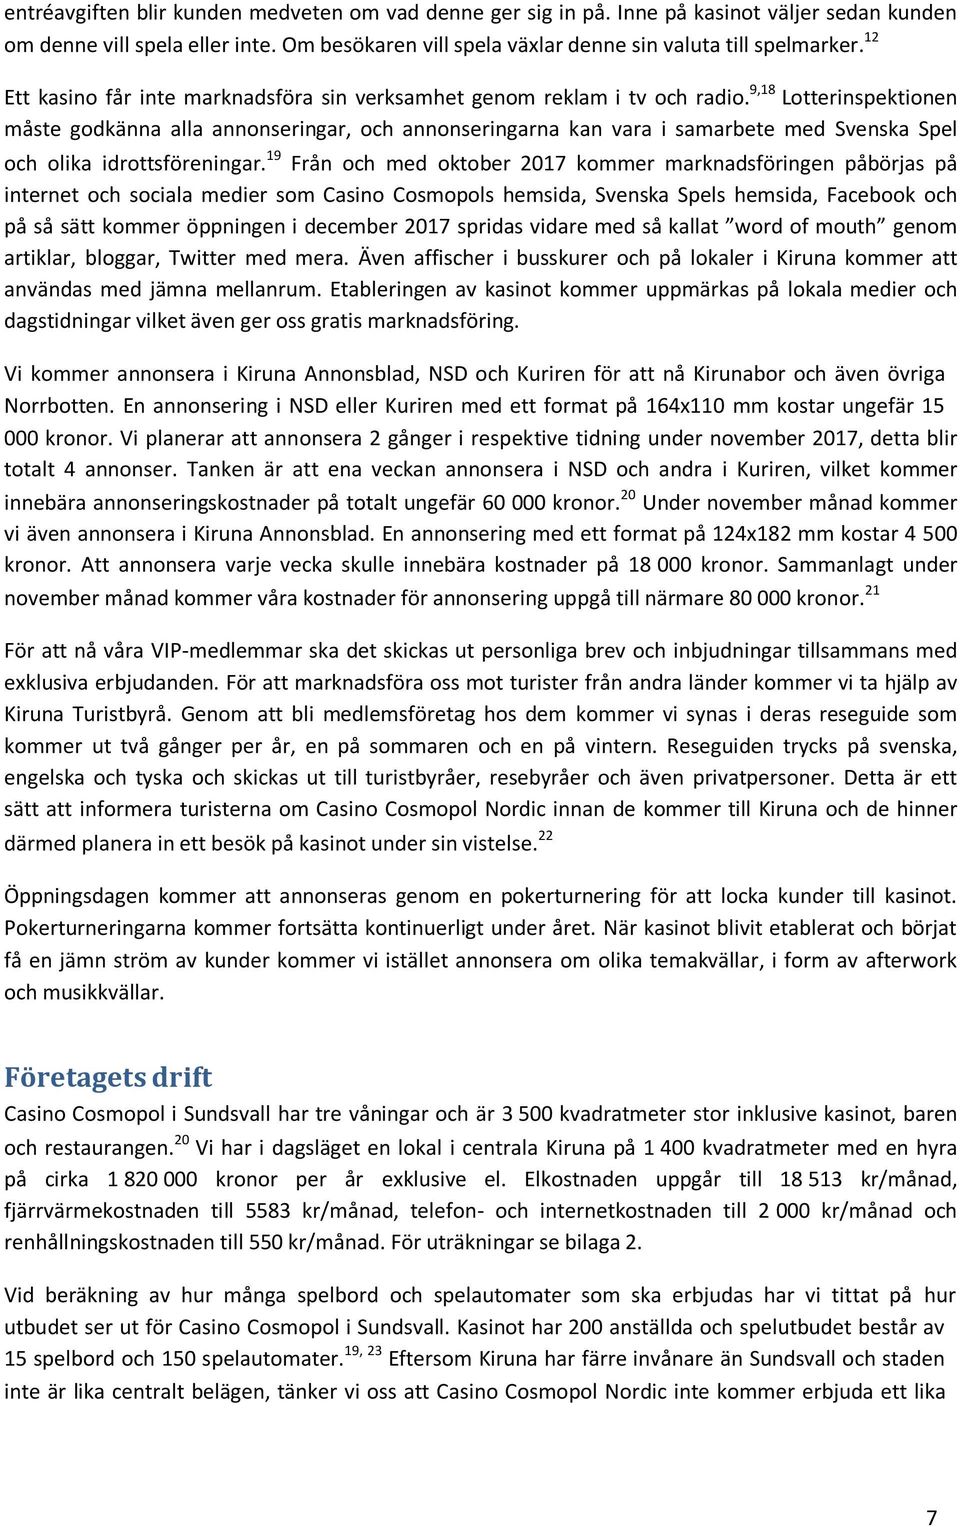 9,18 Lotterinspektionen måste godkänna alla annonseringar, och annonseringarna kan vara i samarbete med Svenska Spel och olika idrottsföreningar.